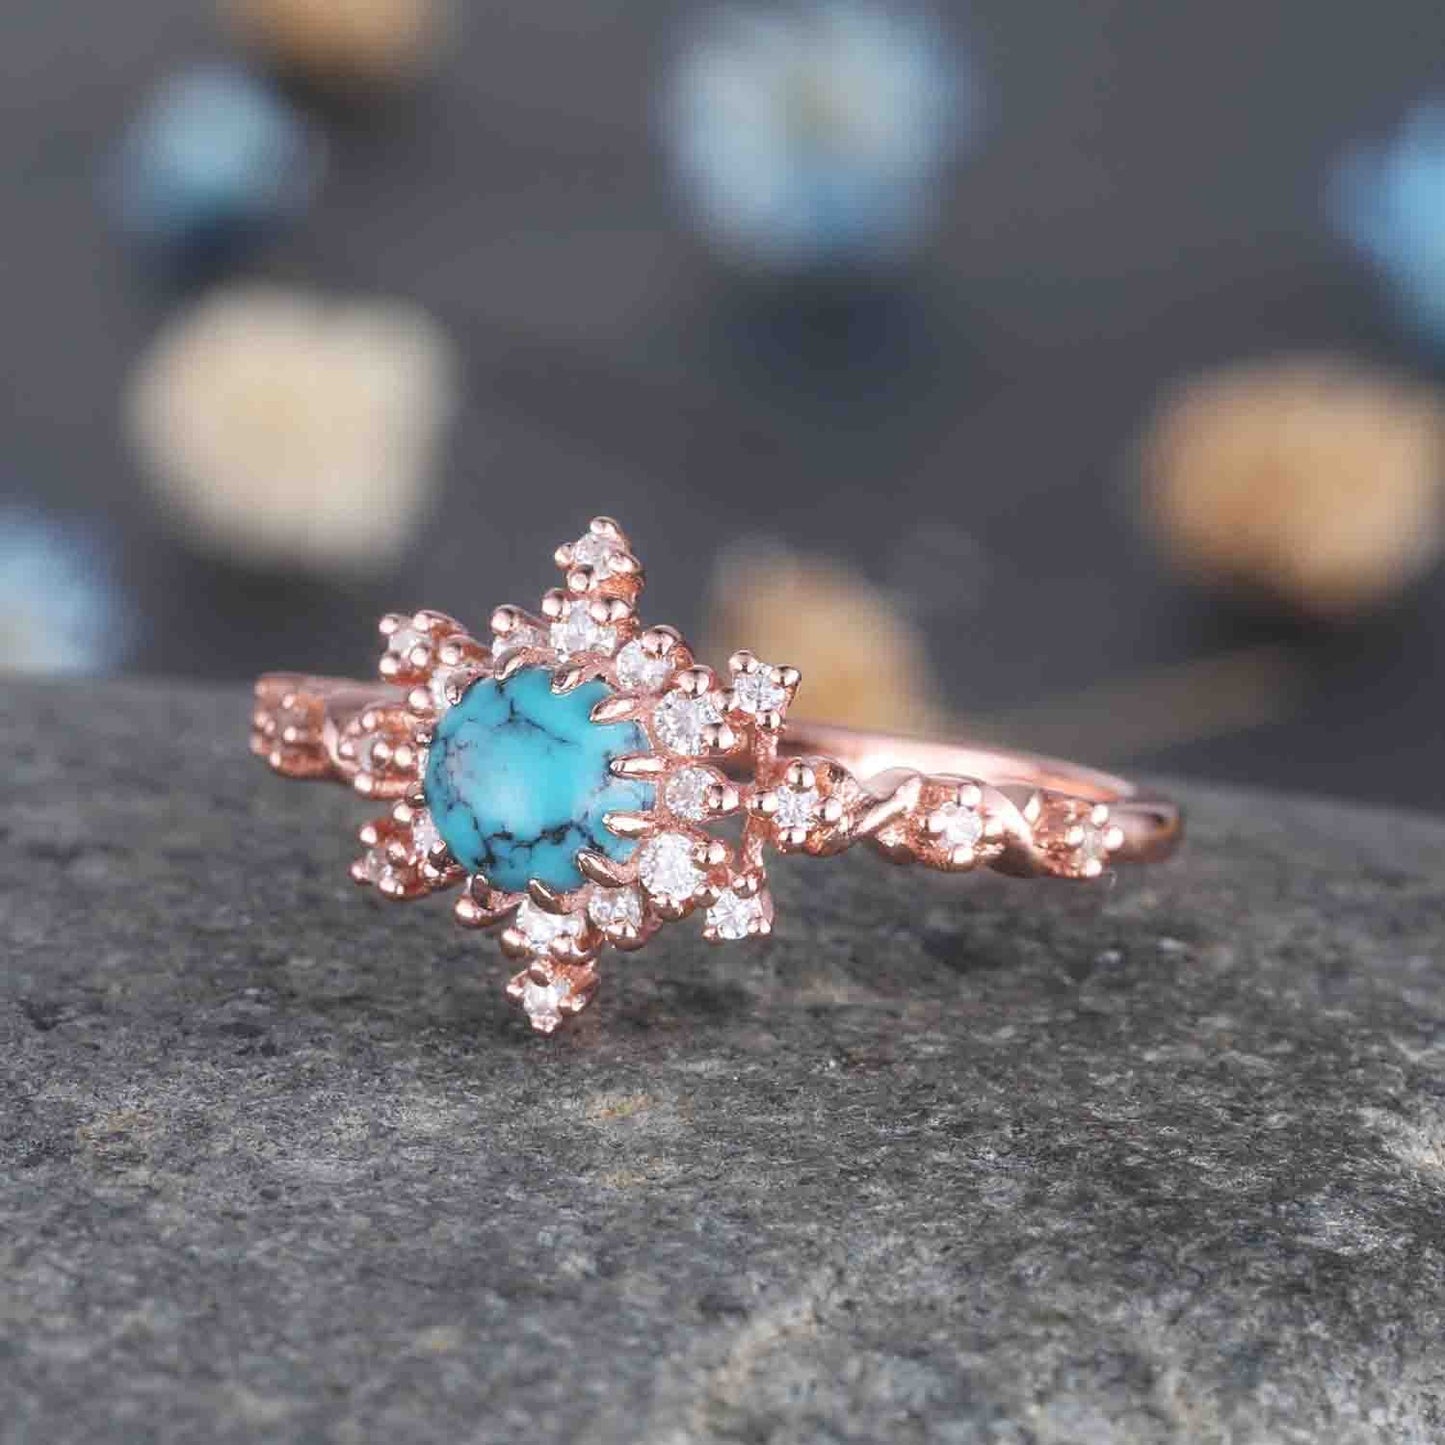 Turquoise Ring Rose Gold Engagement Ring For Women Diamond Moissanite Promise Wedding Ring December Birthstone Anniversary Gift For Her